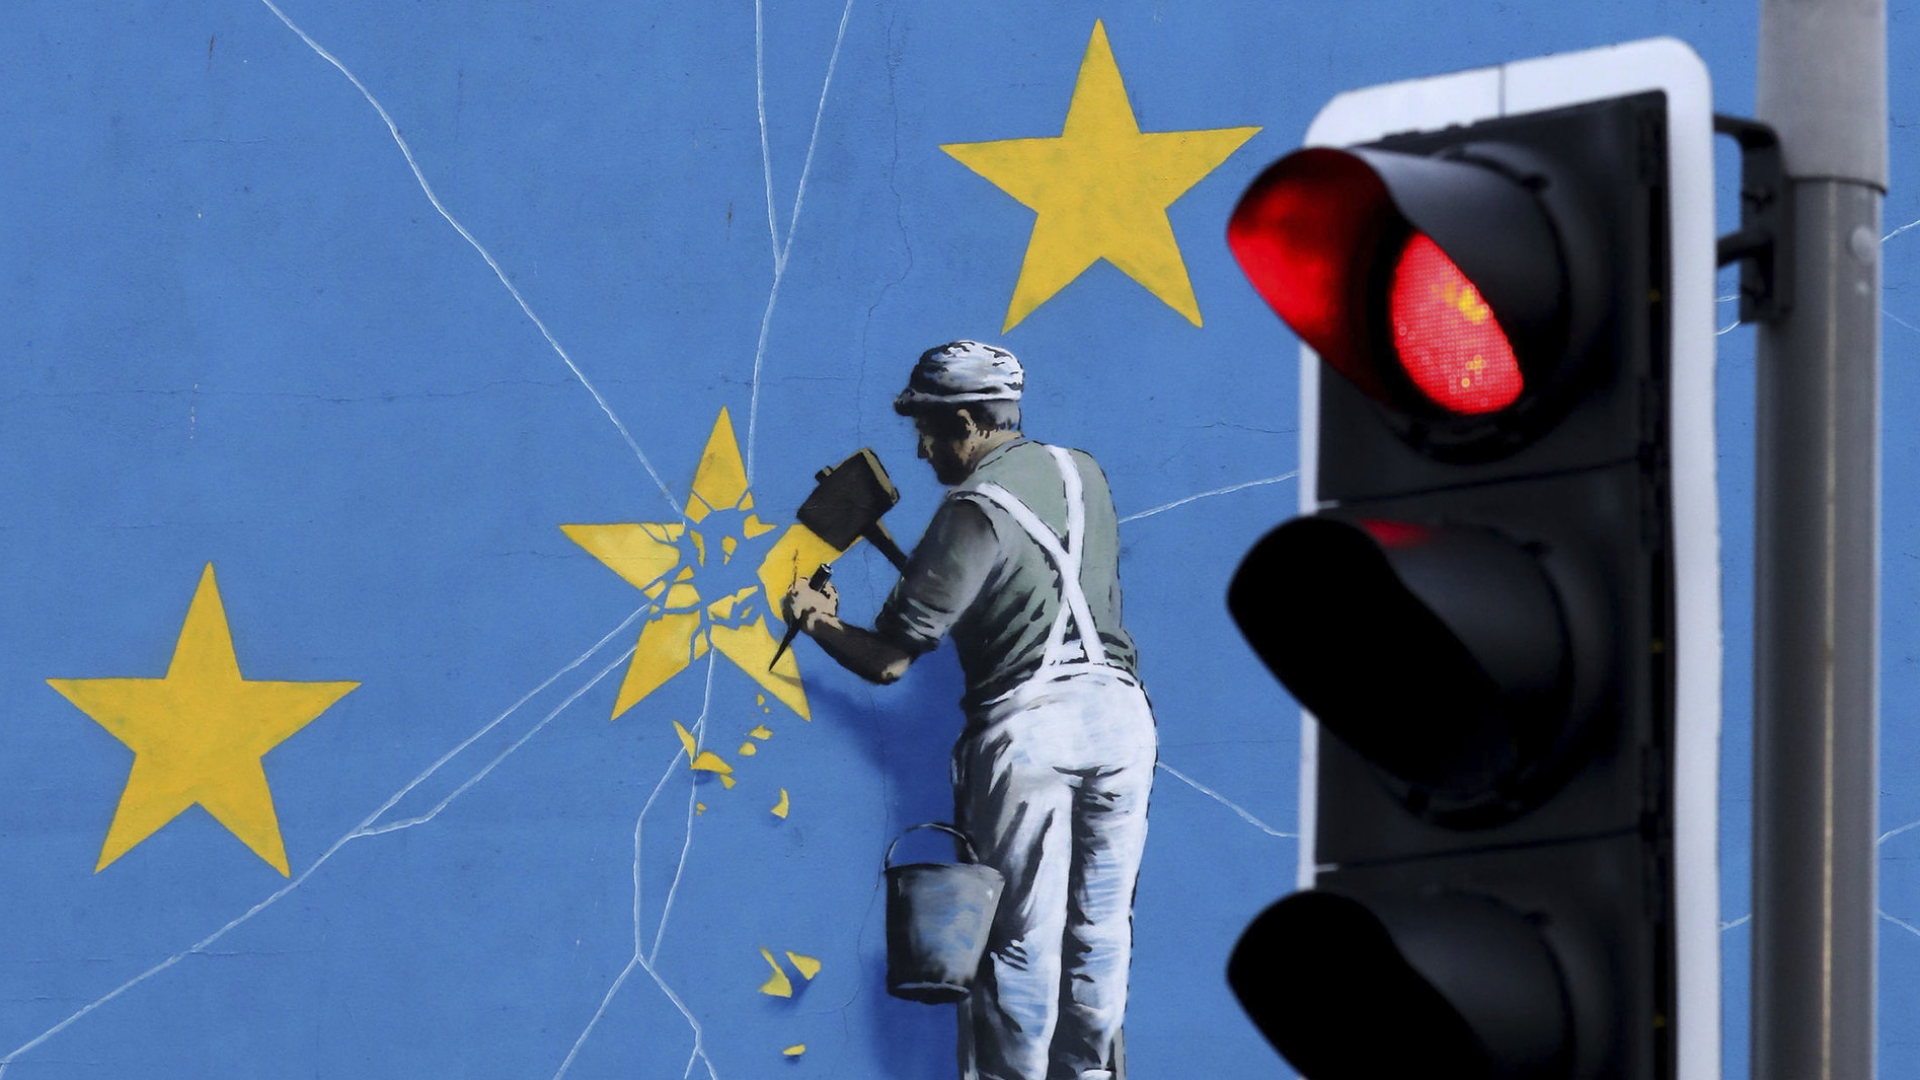 Das Brexit-Wandbild des Künstlers Banksy zeigt einen Mann, der einen Stern aus dem EU-Wappen heraushämmert. | AP